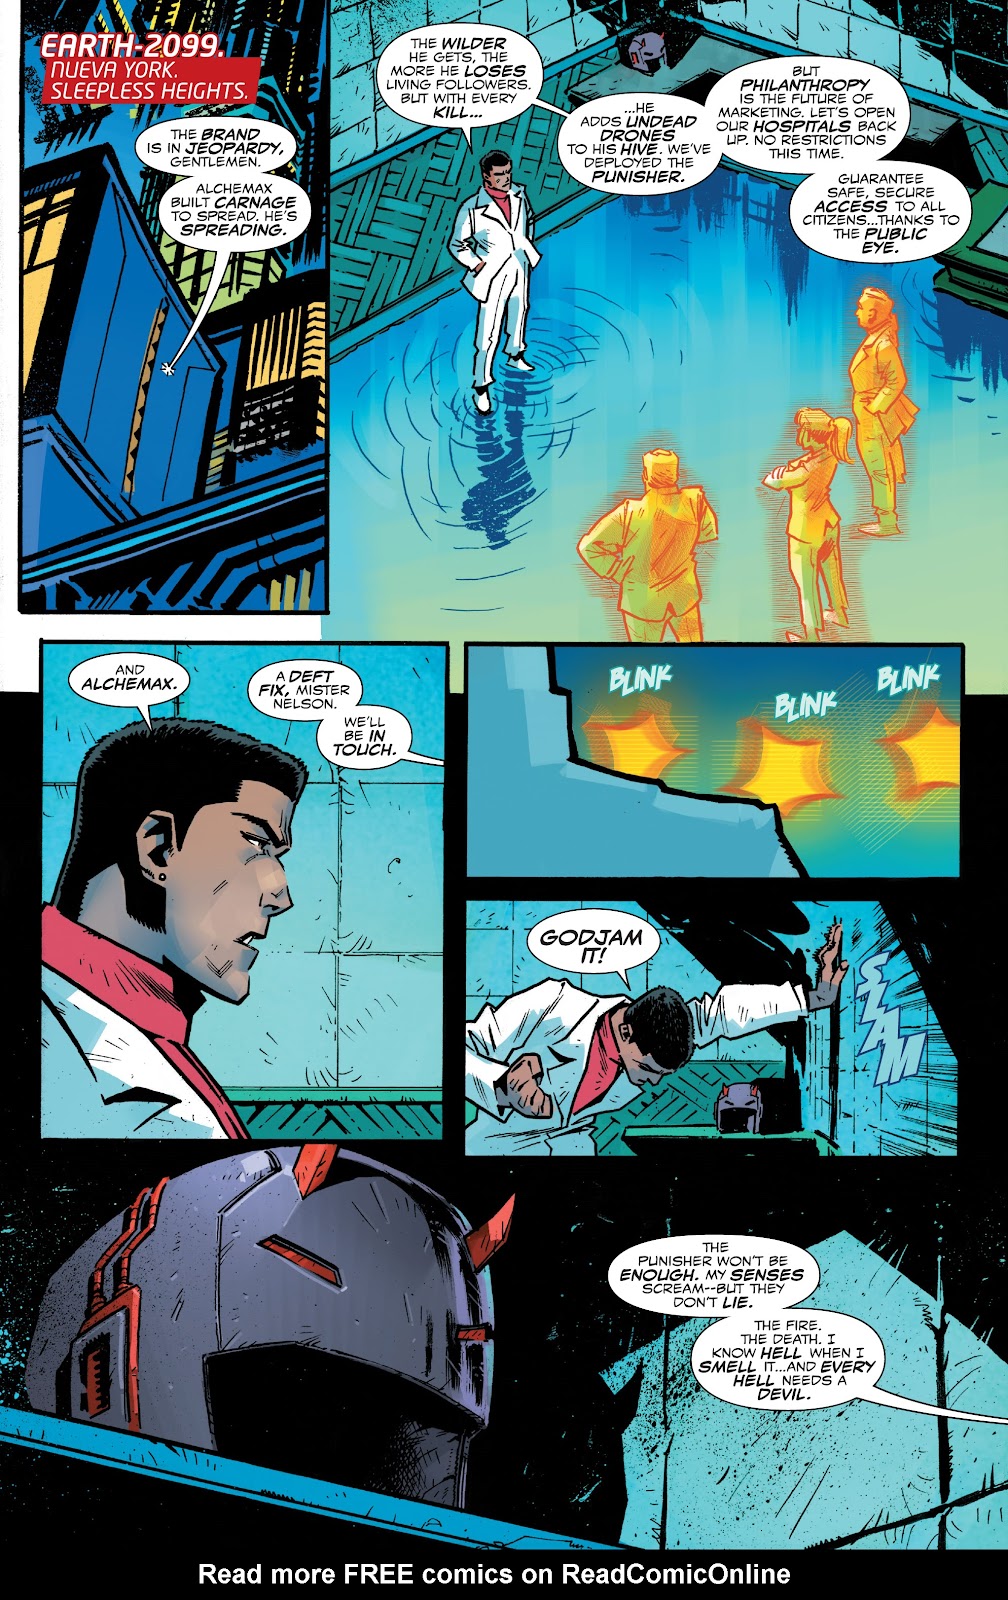 Spider-Man 2099: Dark Genesis issue 4 - Page 2